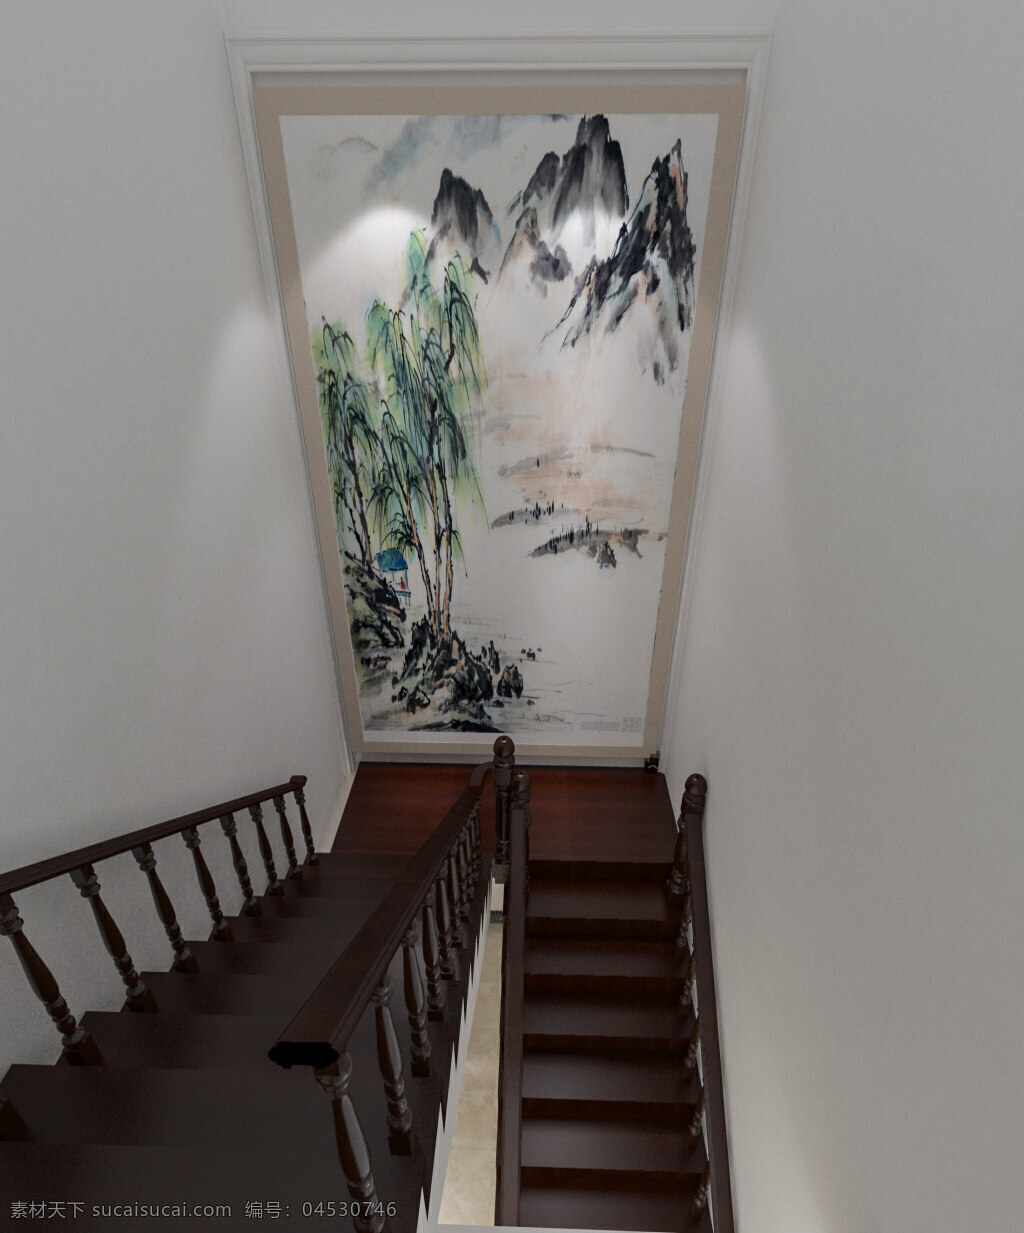 楼梯间 效果图 3dmax 模型 室内模型 效果图模型 3d模型 家装模型 简约效果图 室内效果图 家装效果图 室内设计 楼梯间效果图 楼梯模型